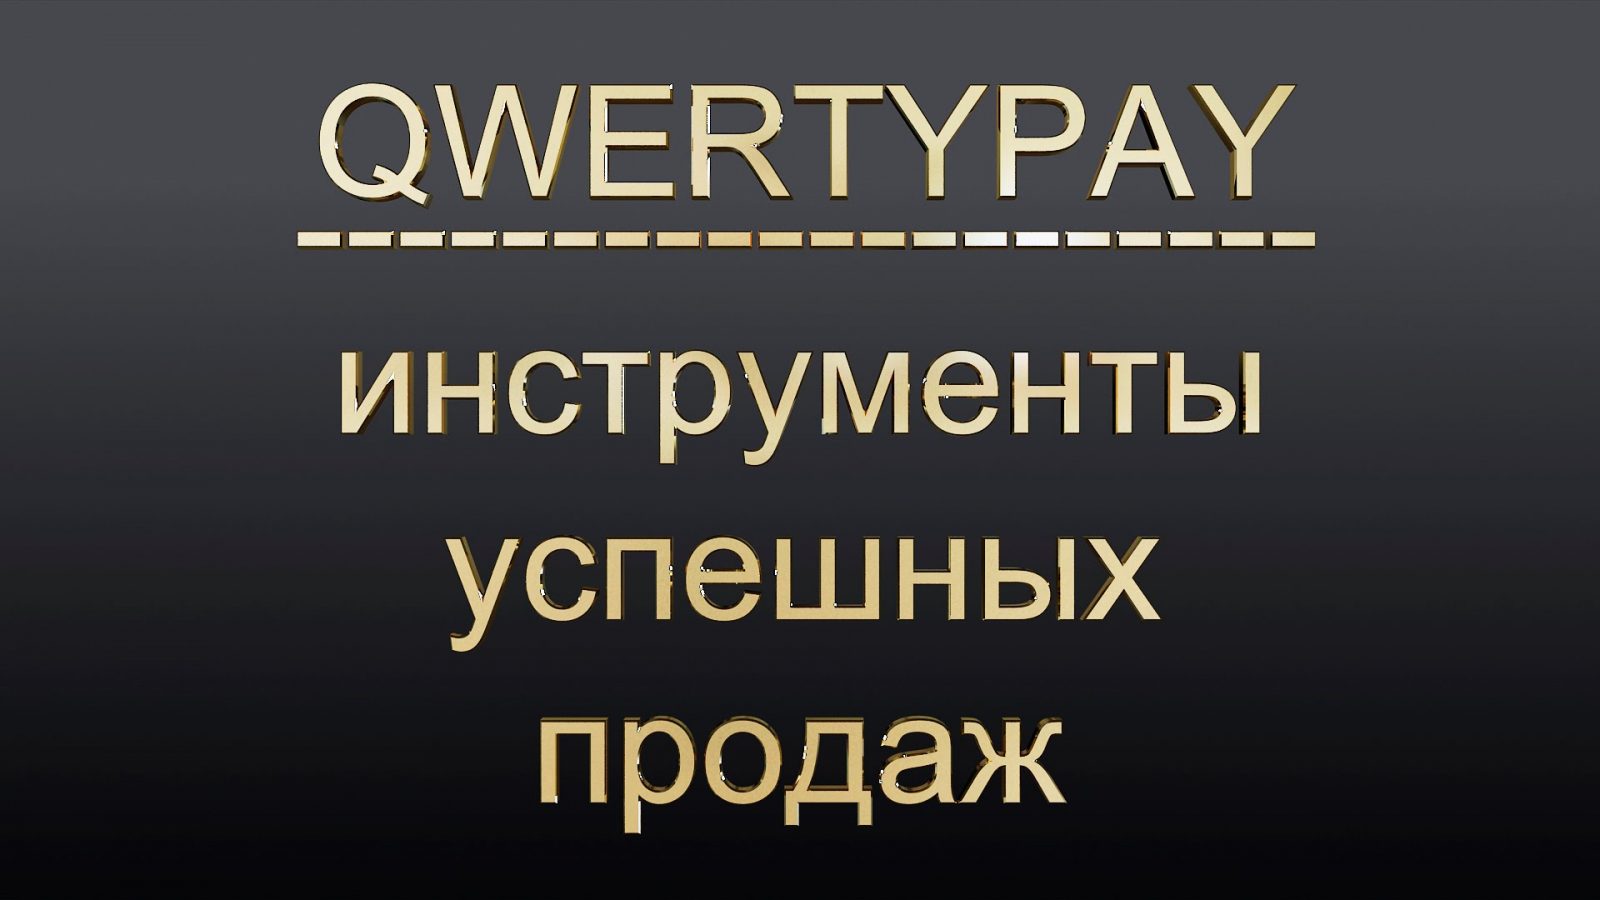 Про сервис QwertyPay